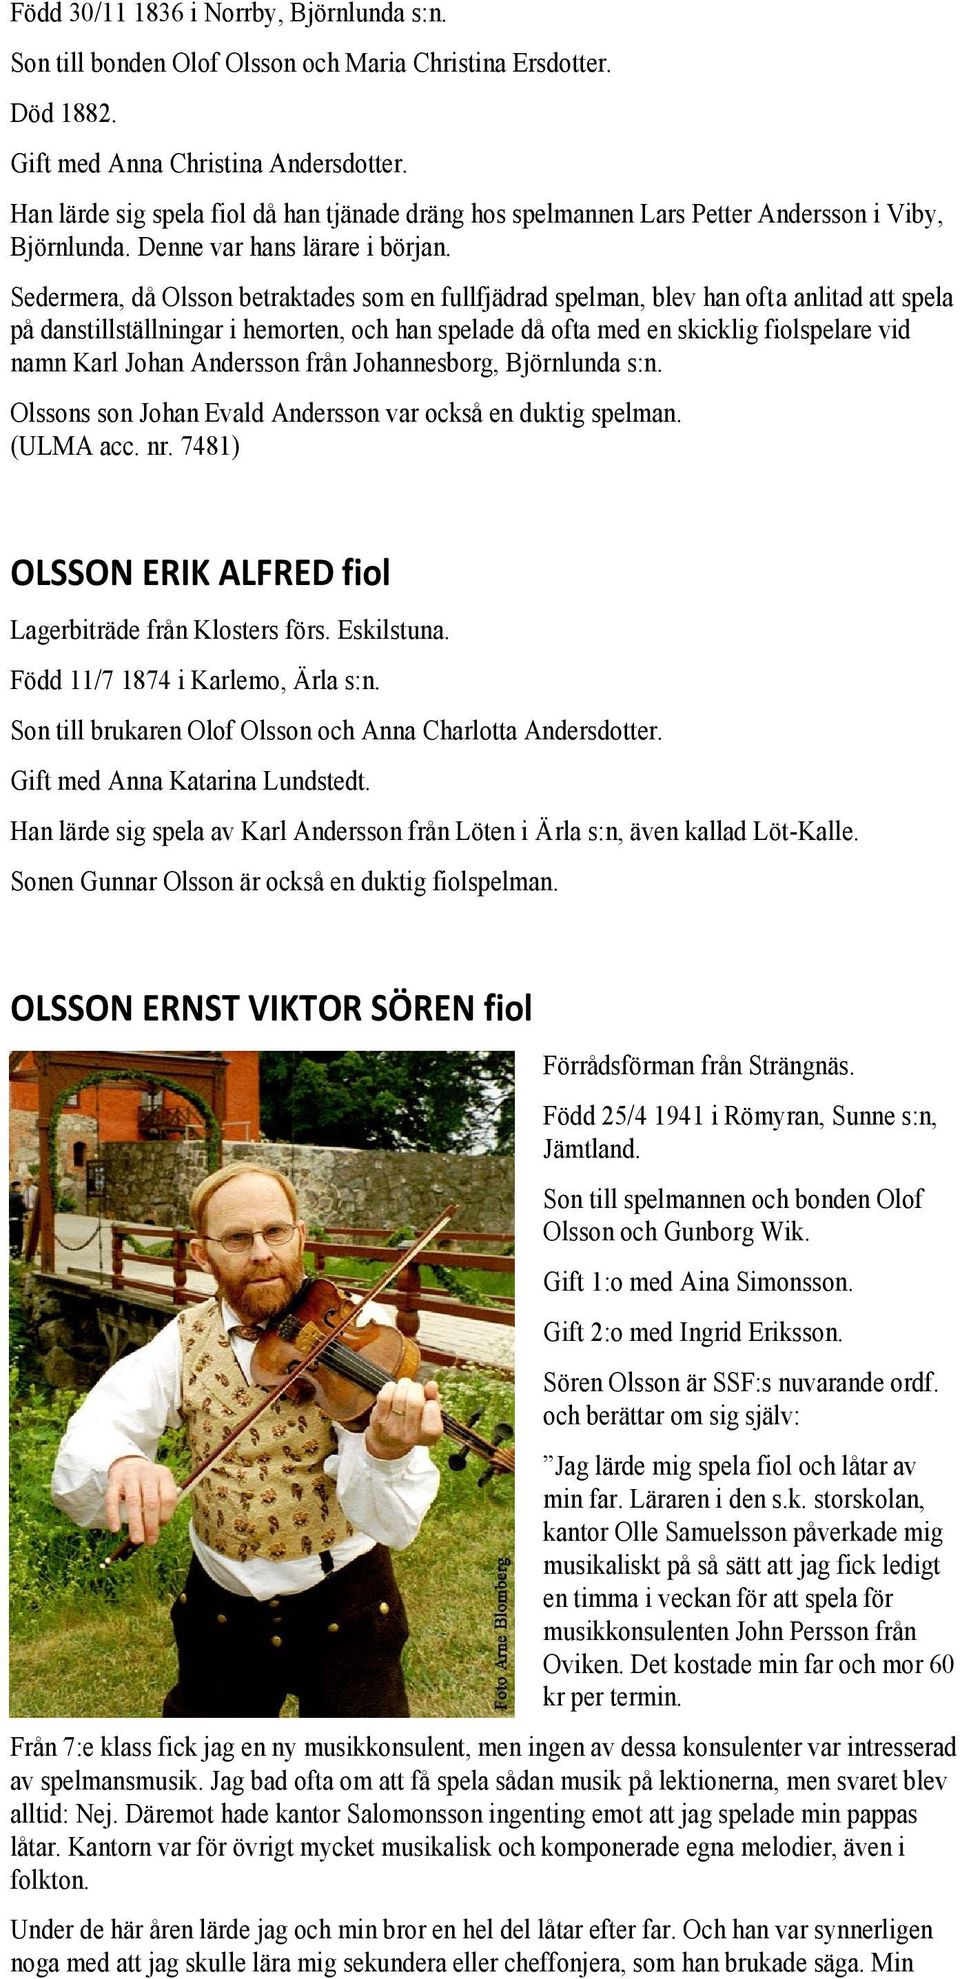 Sedermera, då Olsson betraktades som en fullfjädrad spelman, blev han ofta anlitad att spela på danstillställningar i hemorten, och han spelade då ofta med en skicklig fiolspelare vid namn Karl Johan